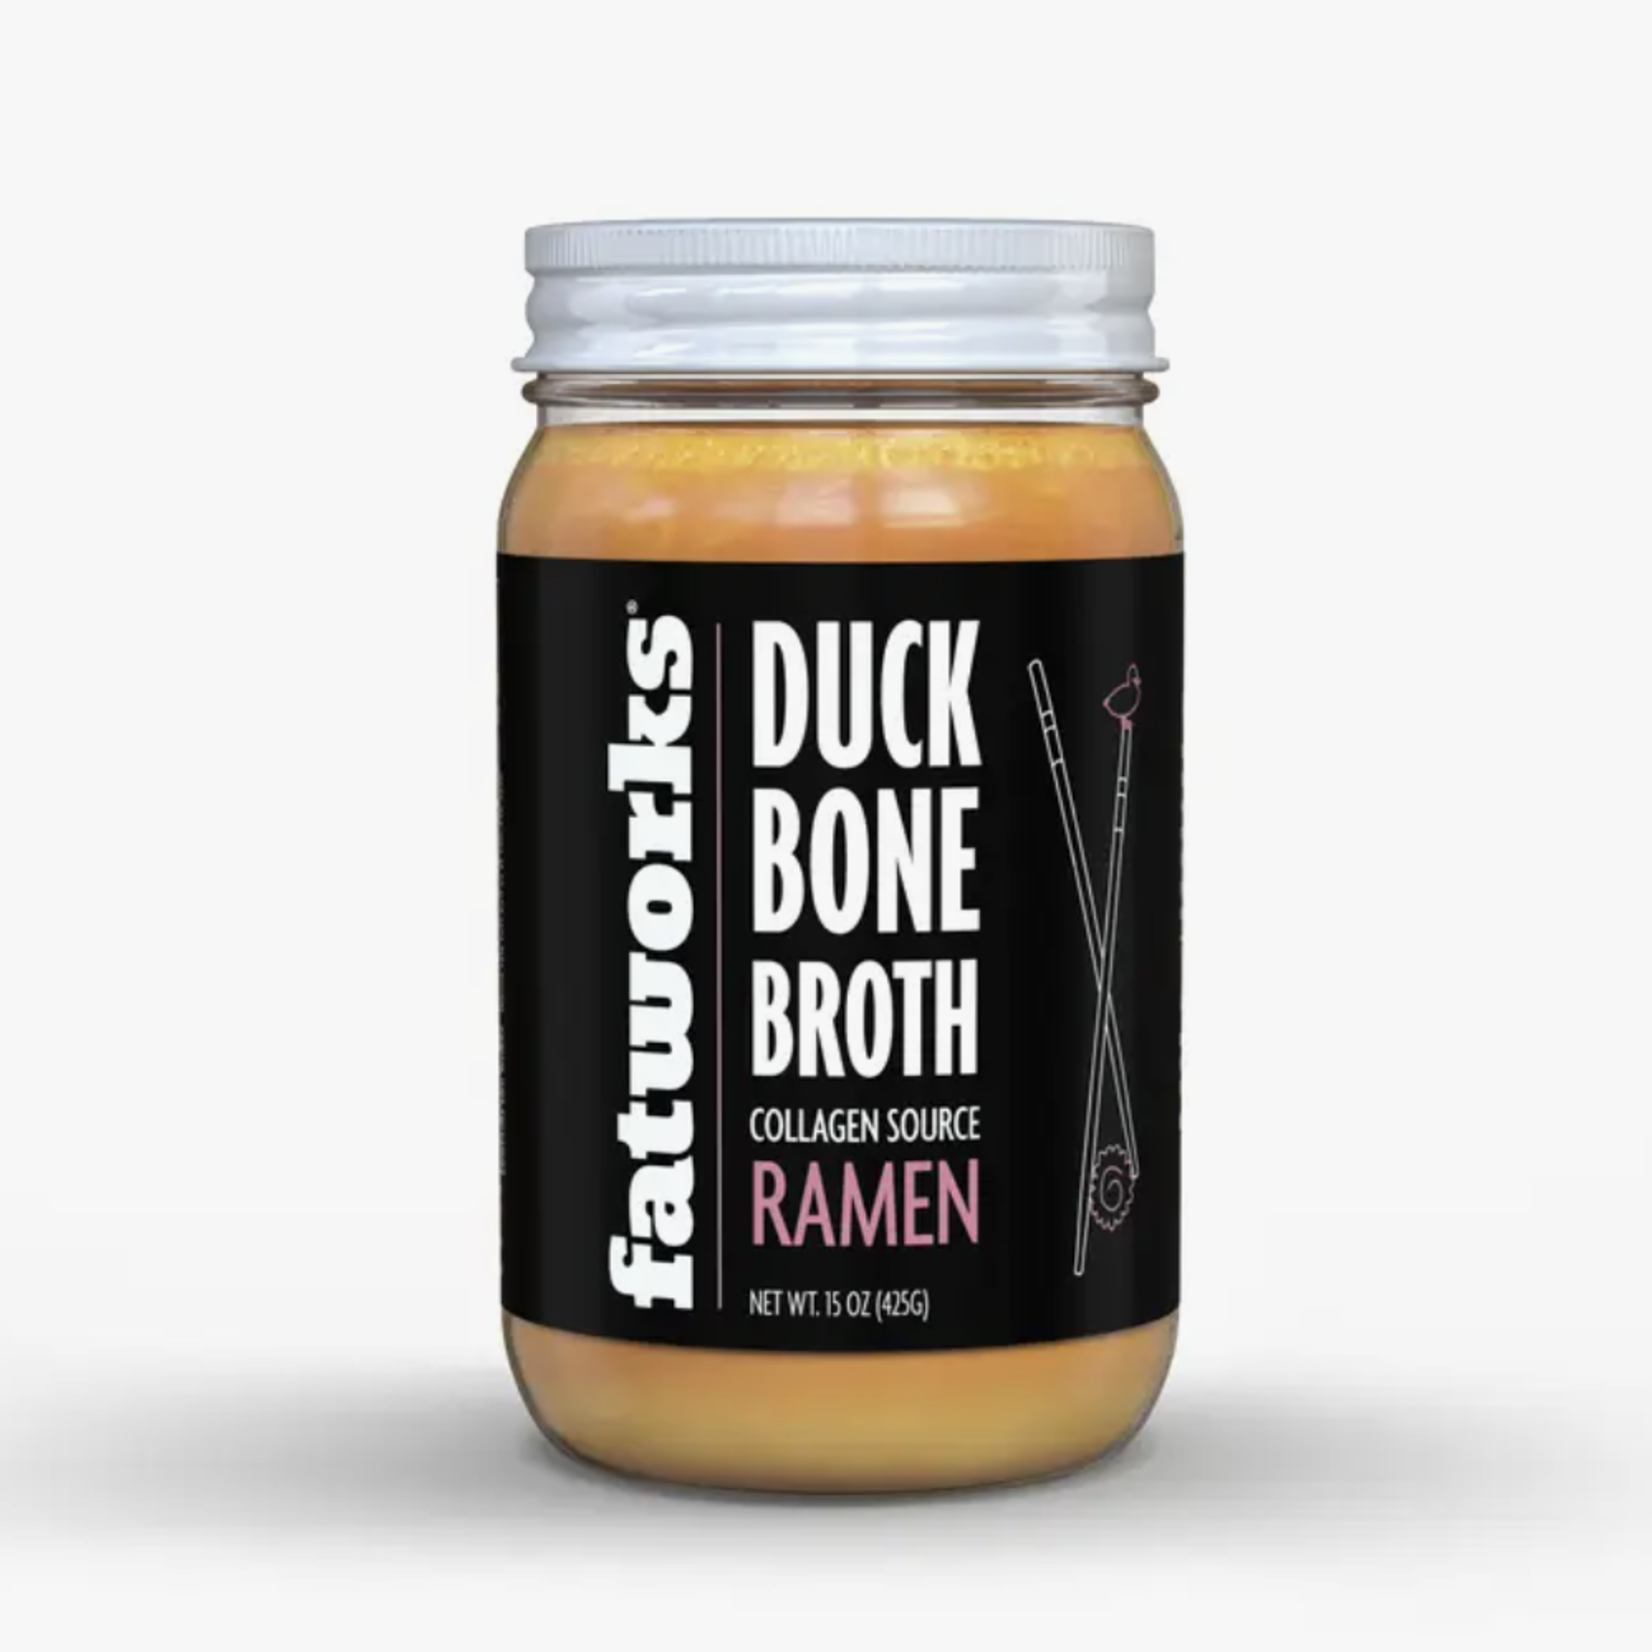 Fatworks Ramen Duck Bone Broth